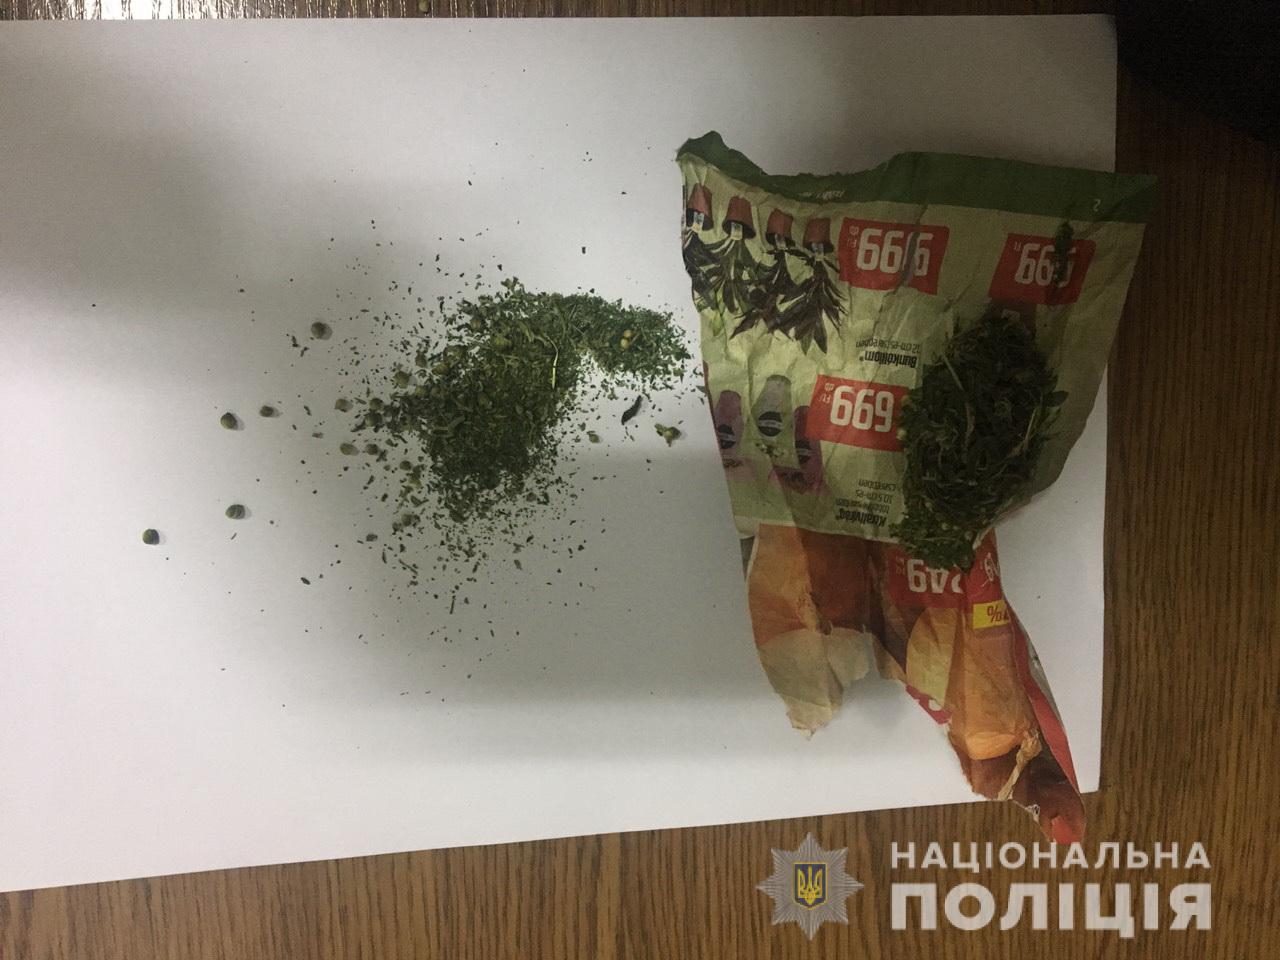 Після святкування Дня села у Соломонові, на Ужгородщині затримали юнака з наркотиками (ФОТО)